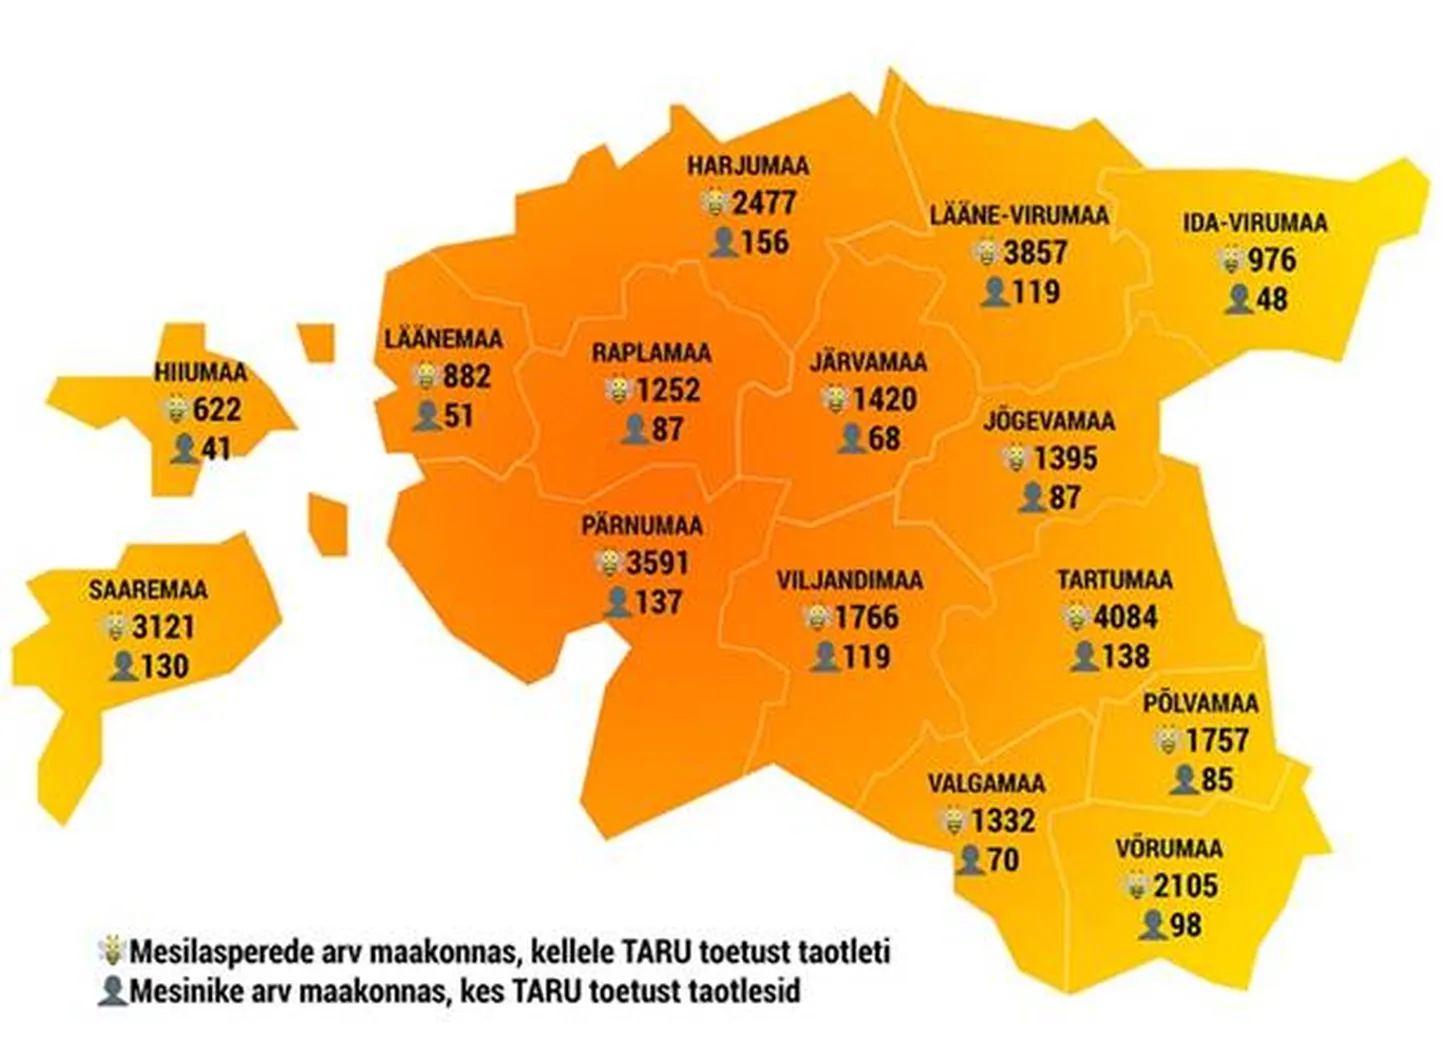 Mesilaspere toetuse (TARU) taotlejaid oli kõige rohkem Harju- ja Tartumaal.